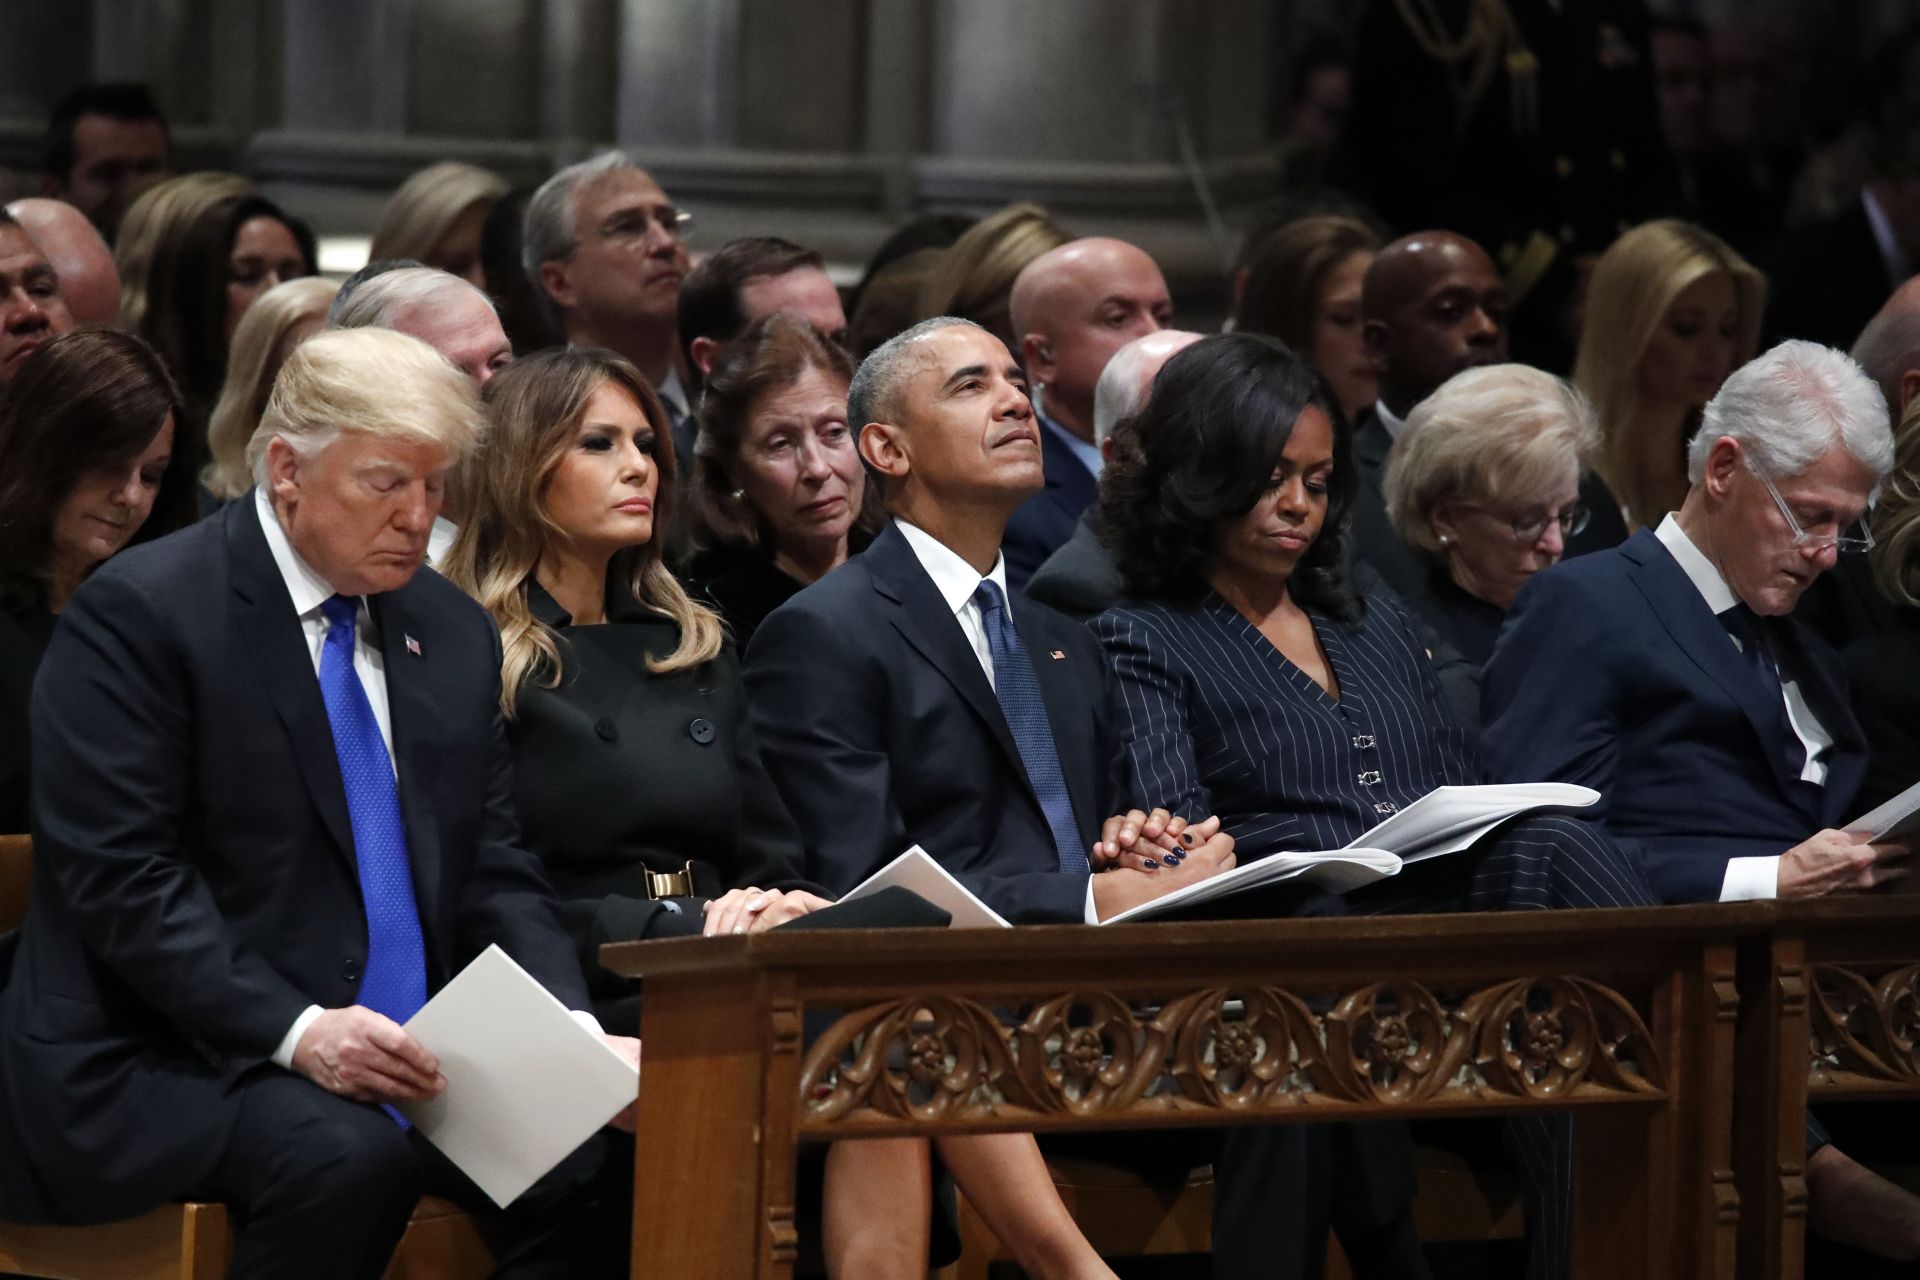 Доналд Тръмп и Барак Обама бяха със съпругите си - Мелания и Мишел